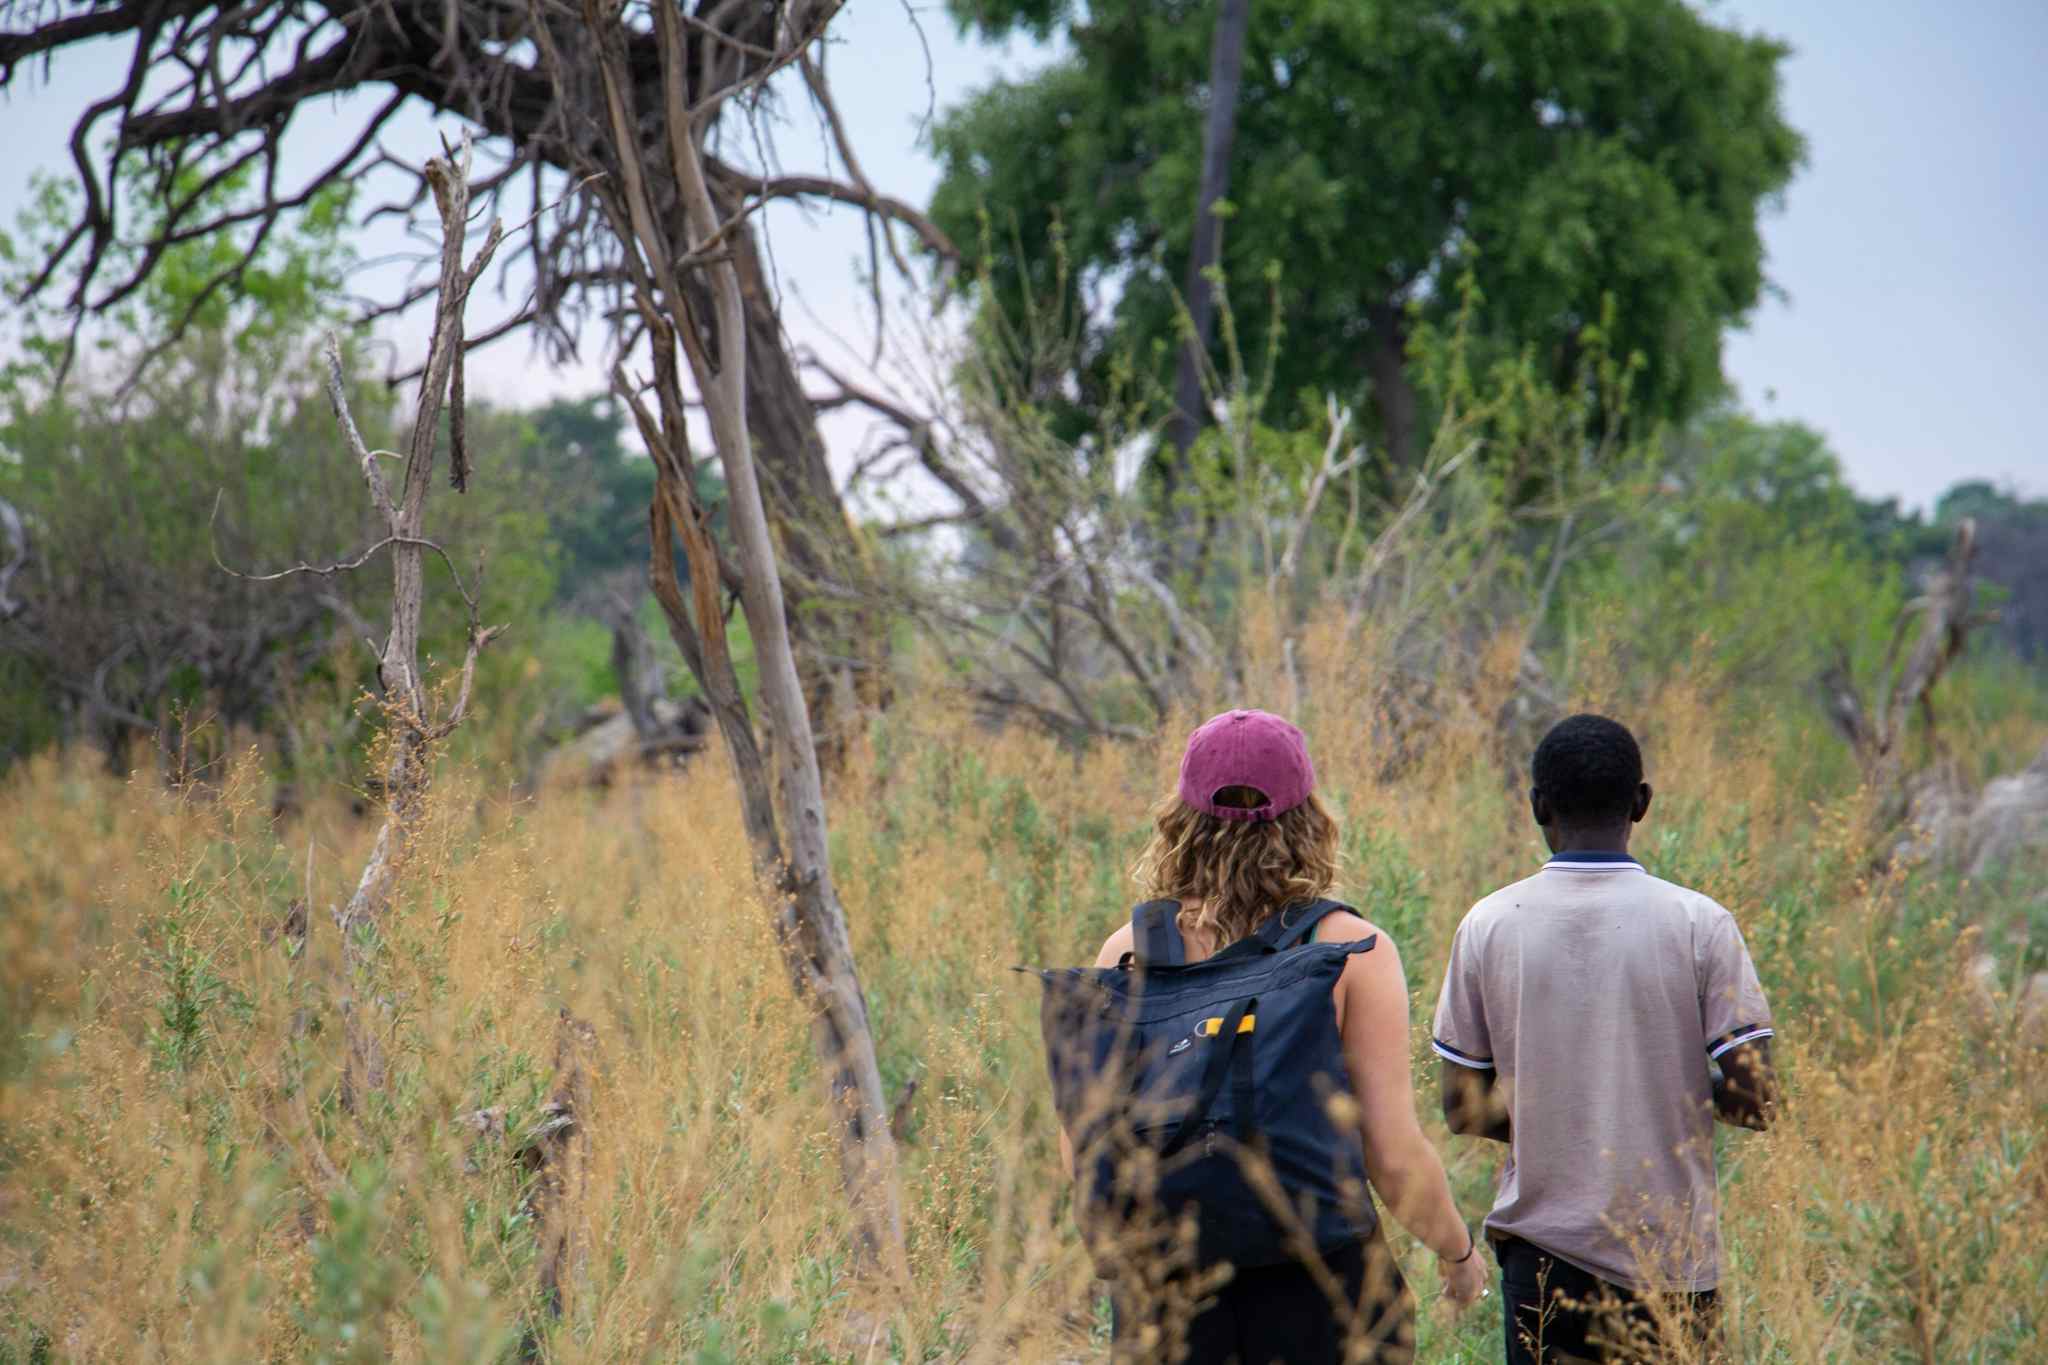 STAFF - Bushwalking in the Okavango Delta, Botswana. Photo: Staff/Chris Kearney
